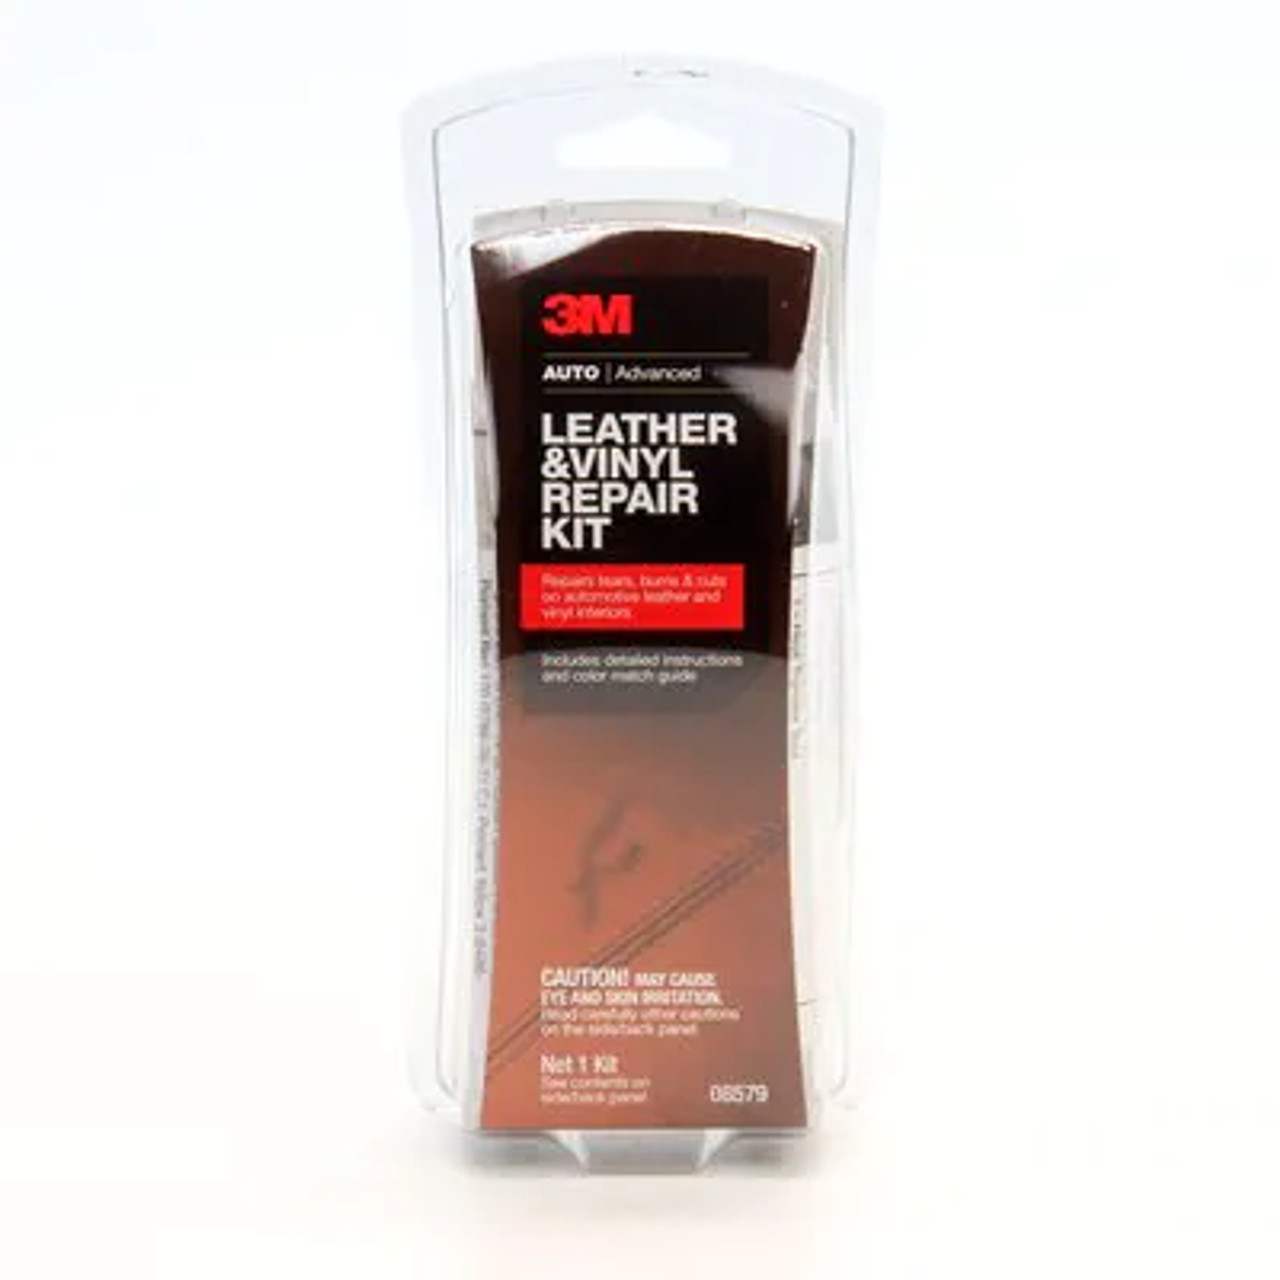 3M™ Leather and Vinyl Repair Kit, 08579